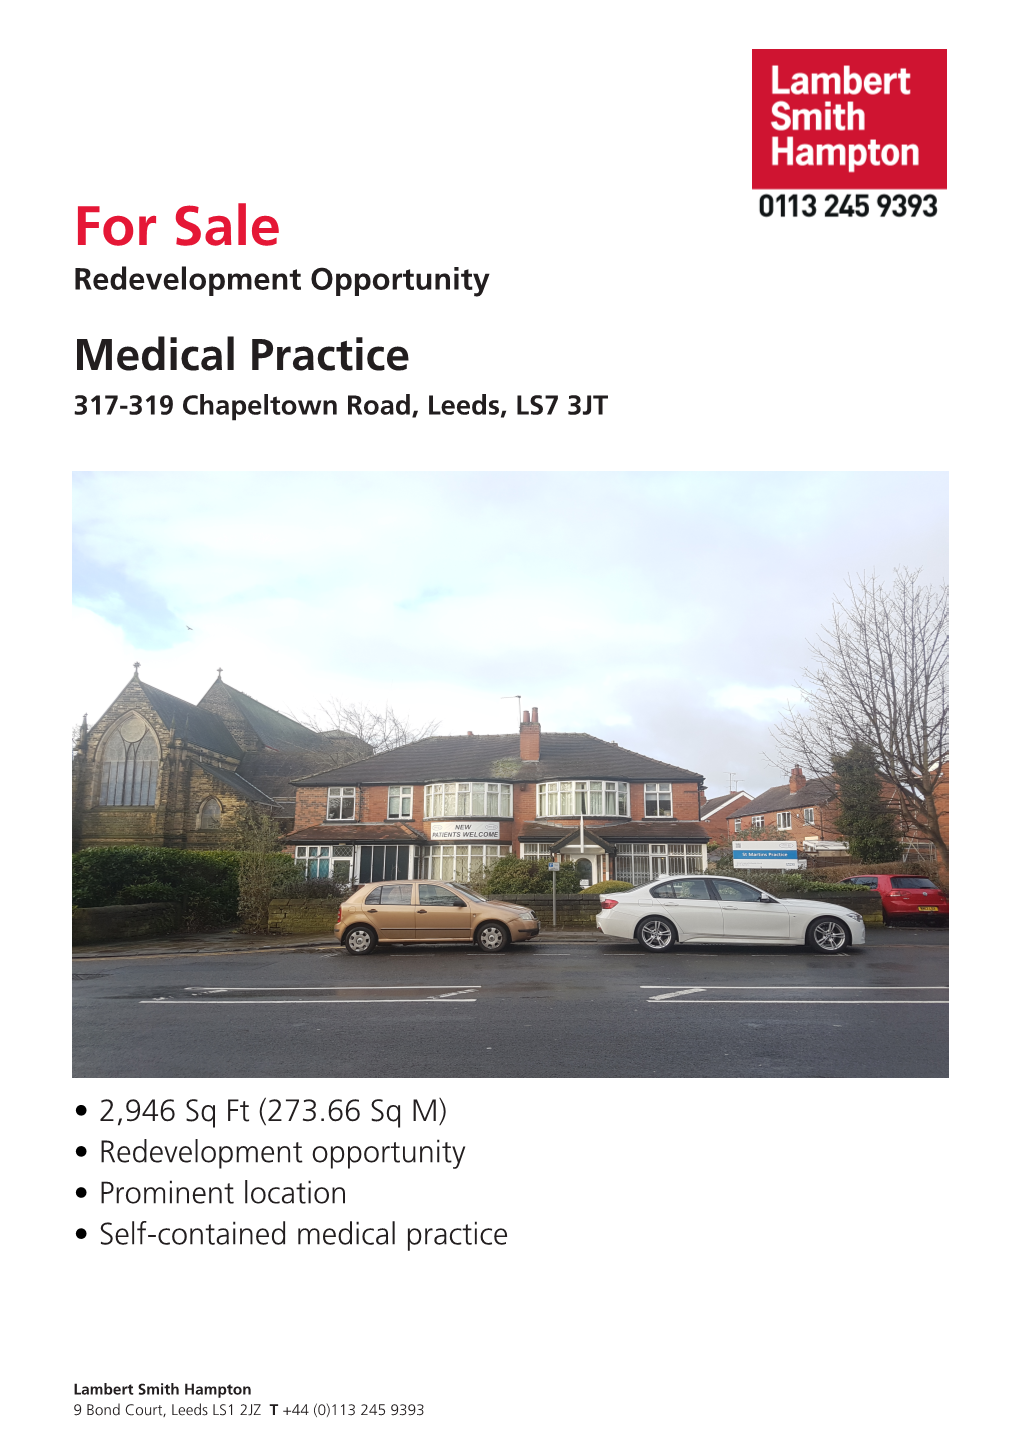 For Sale,317-319 Chapeltown Road, Leeds, LS7